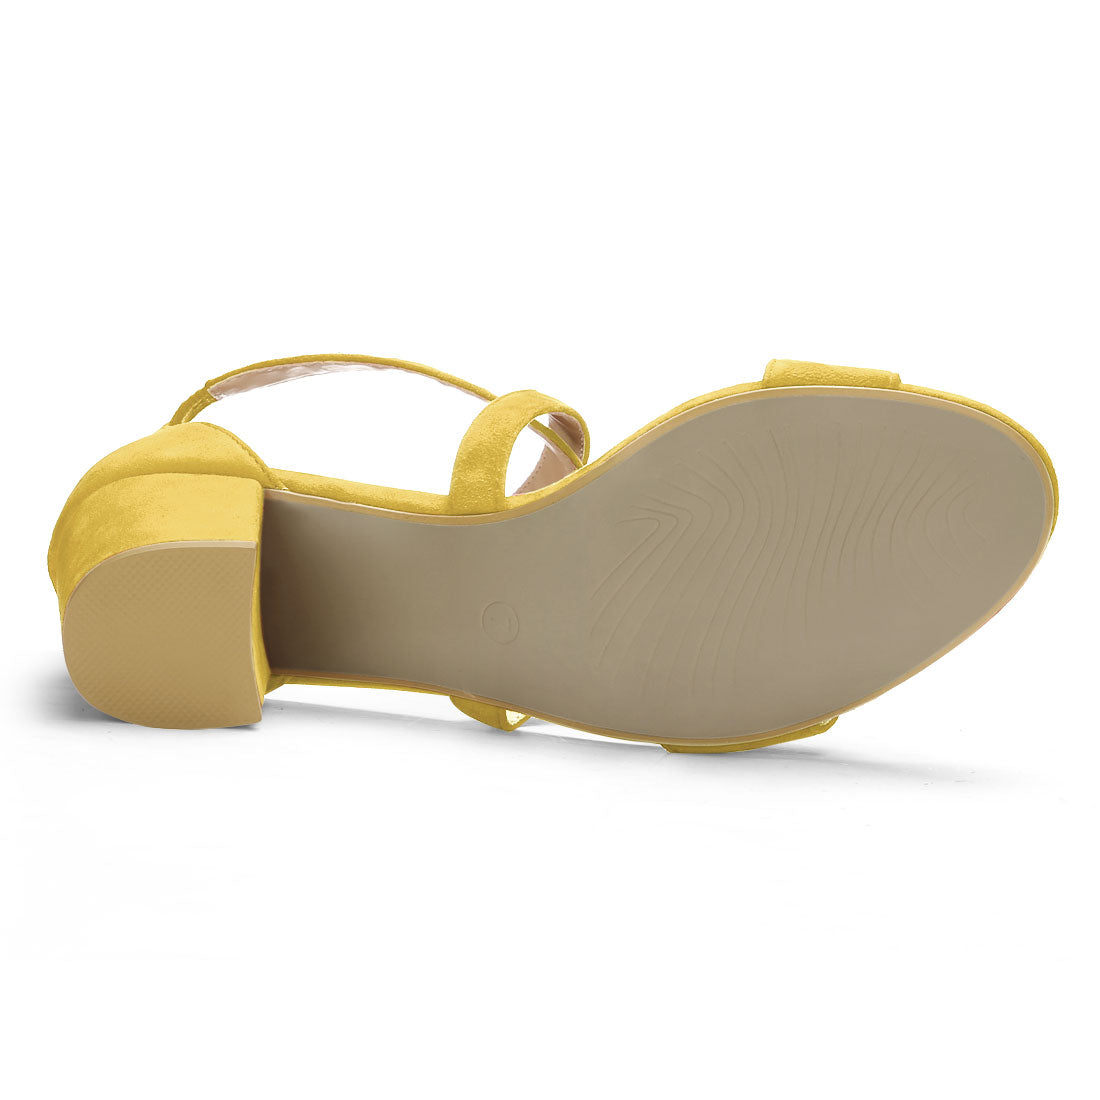 Allegra K Straps Mid Heel Ankle Strap Sandals Yellow